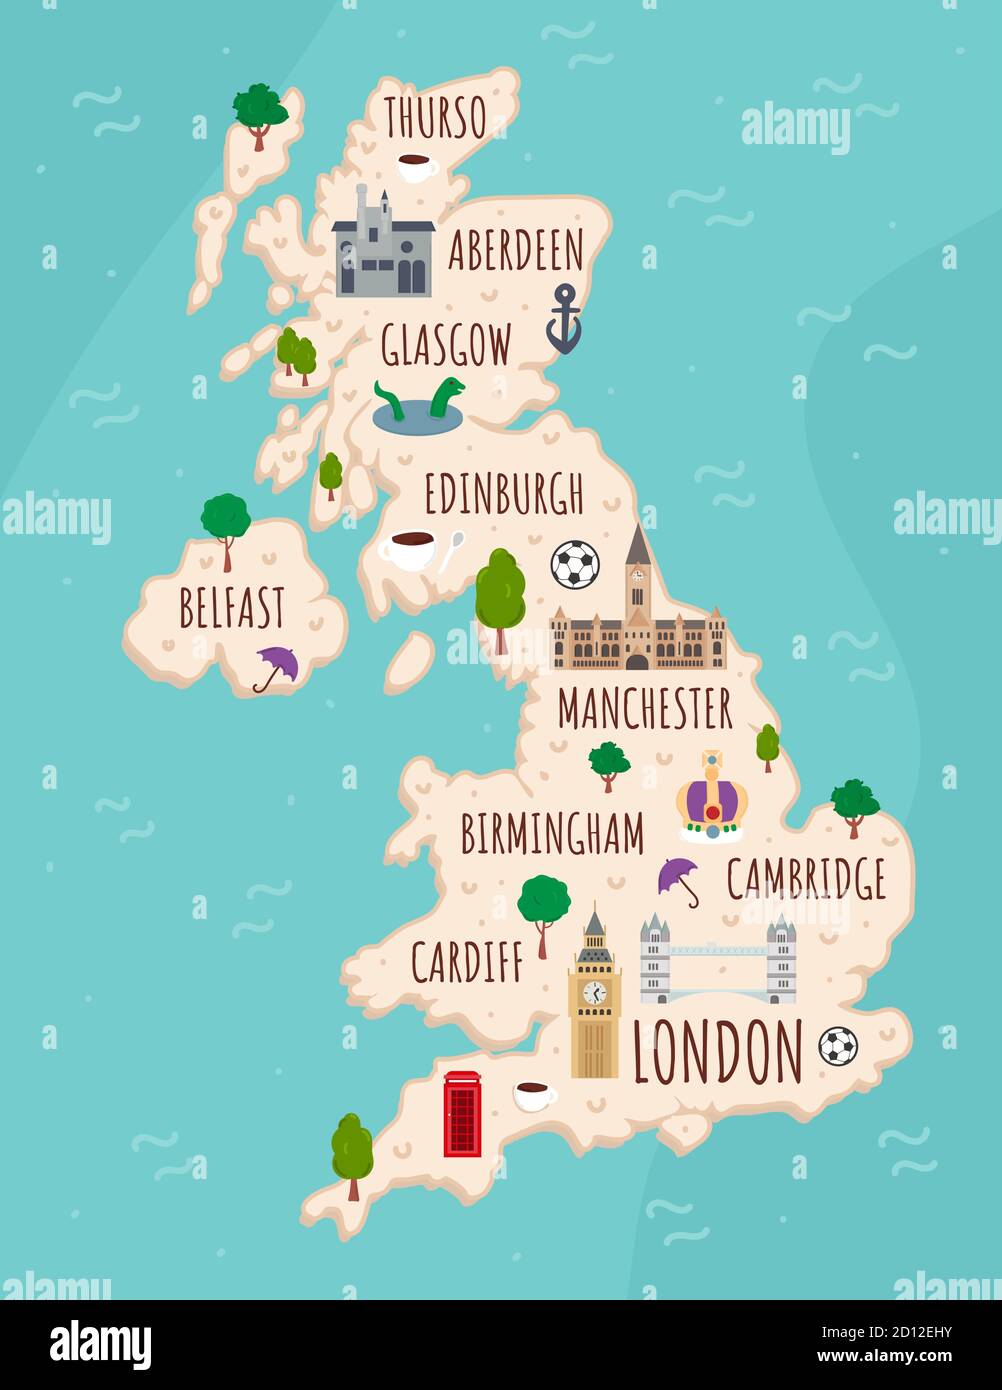 Cartoon mappa del Regno Unito. Viaggia con un'illustrazione dei monumenti, degli edifici, del cibo e delle piante inglesi. Infografiche turistiche divertenti. Simboli nazionali Illustrazione Vettoriale